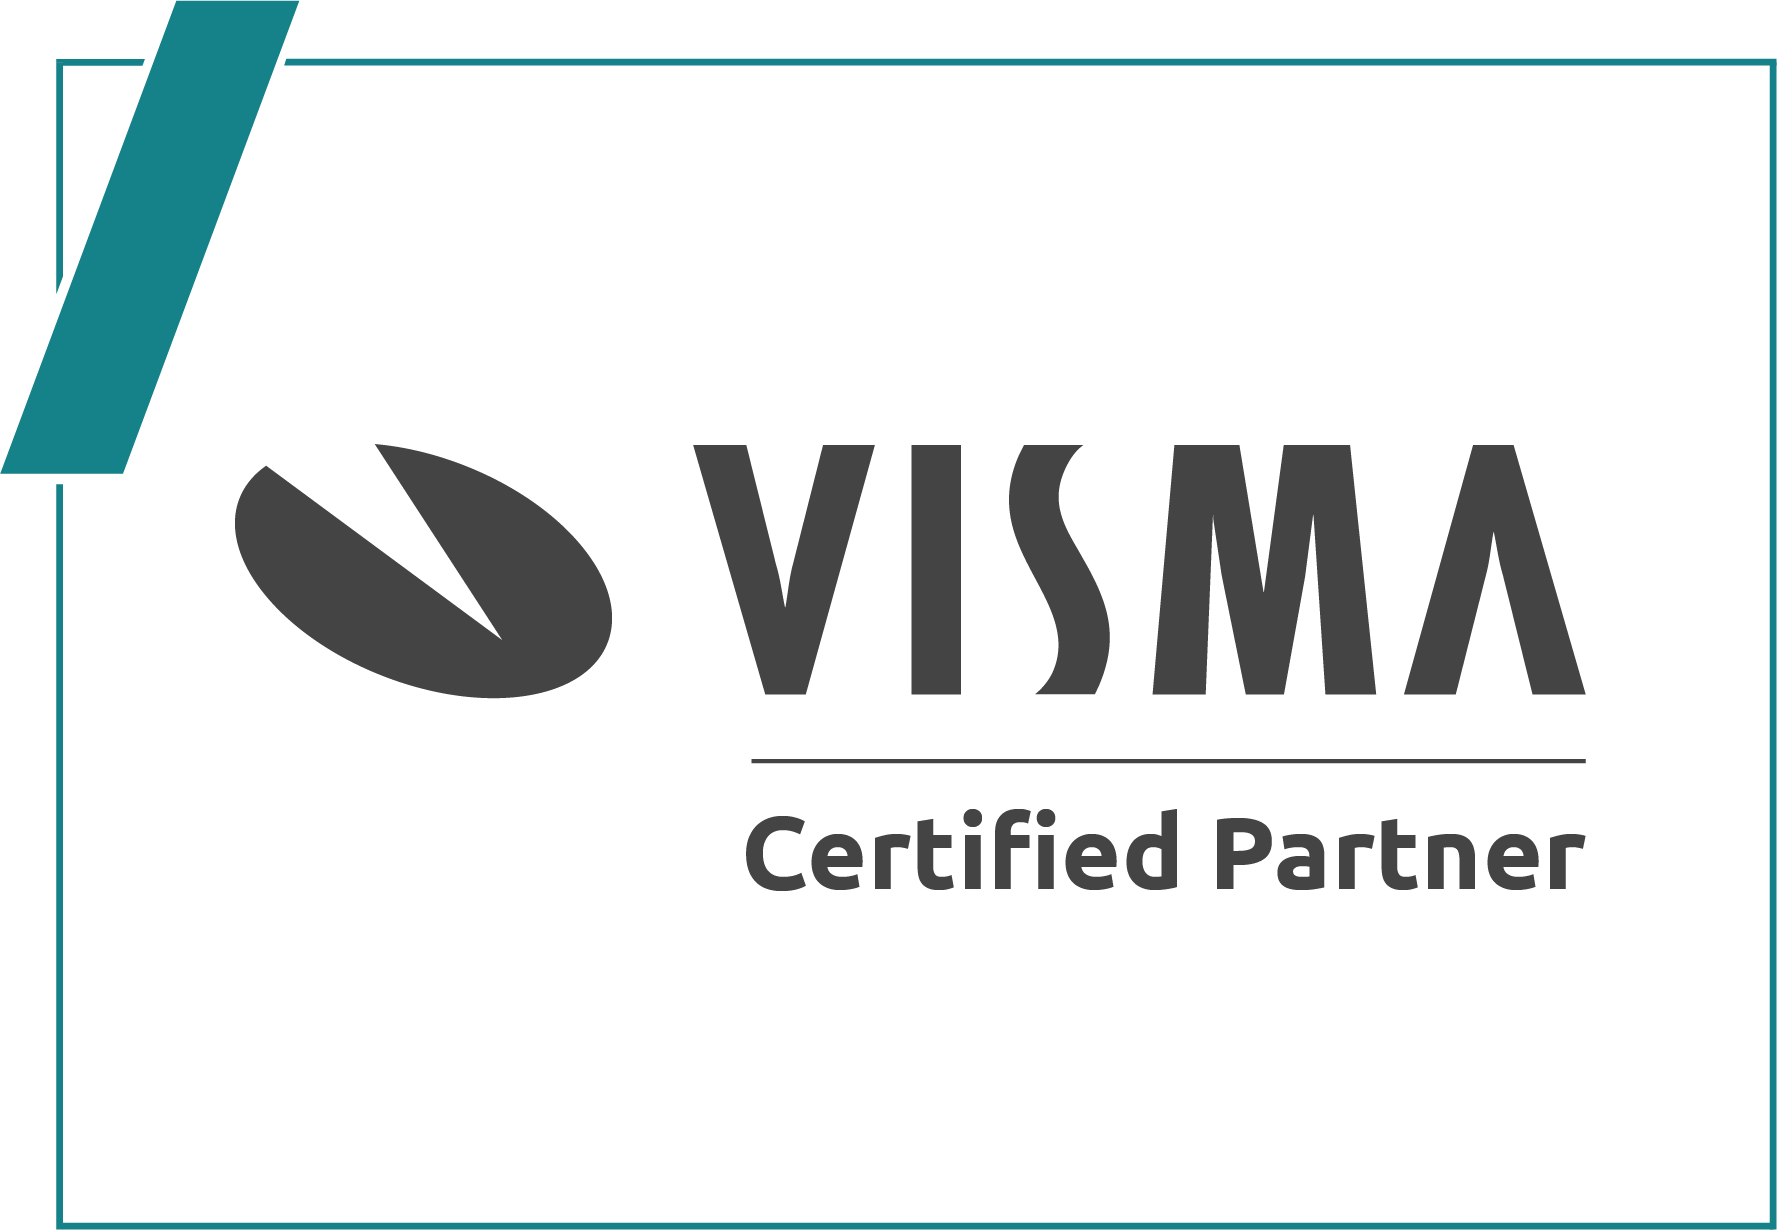 Visma-regnskapsystem-certified-partner-logo-grå